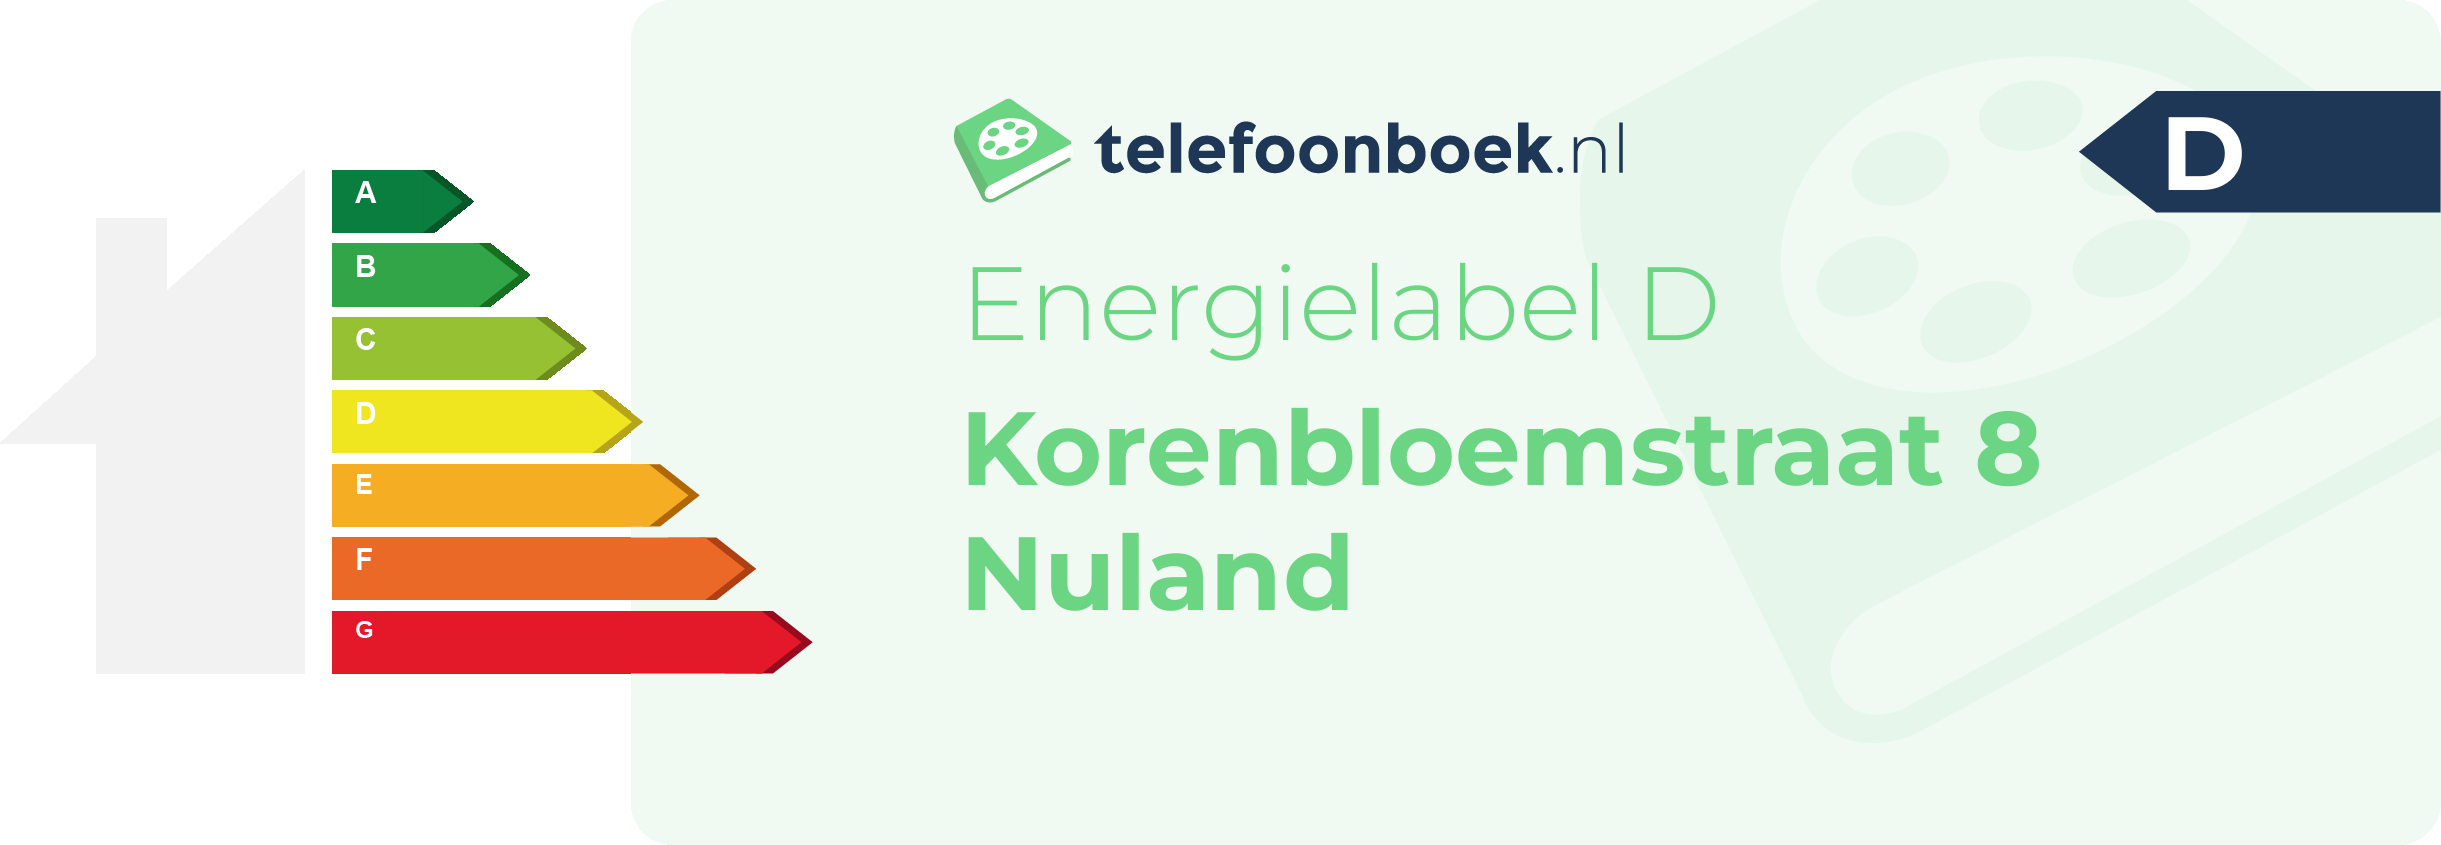 Energielabel Korenbloemstraat 8 Nuland